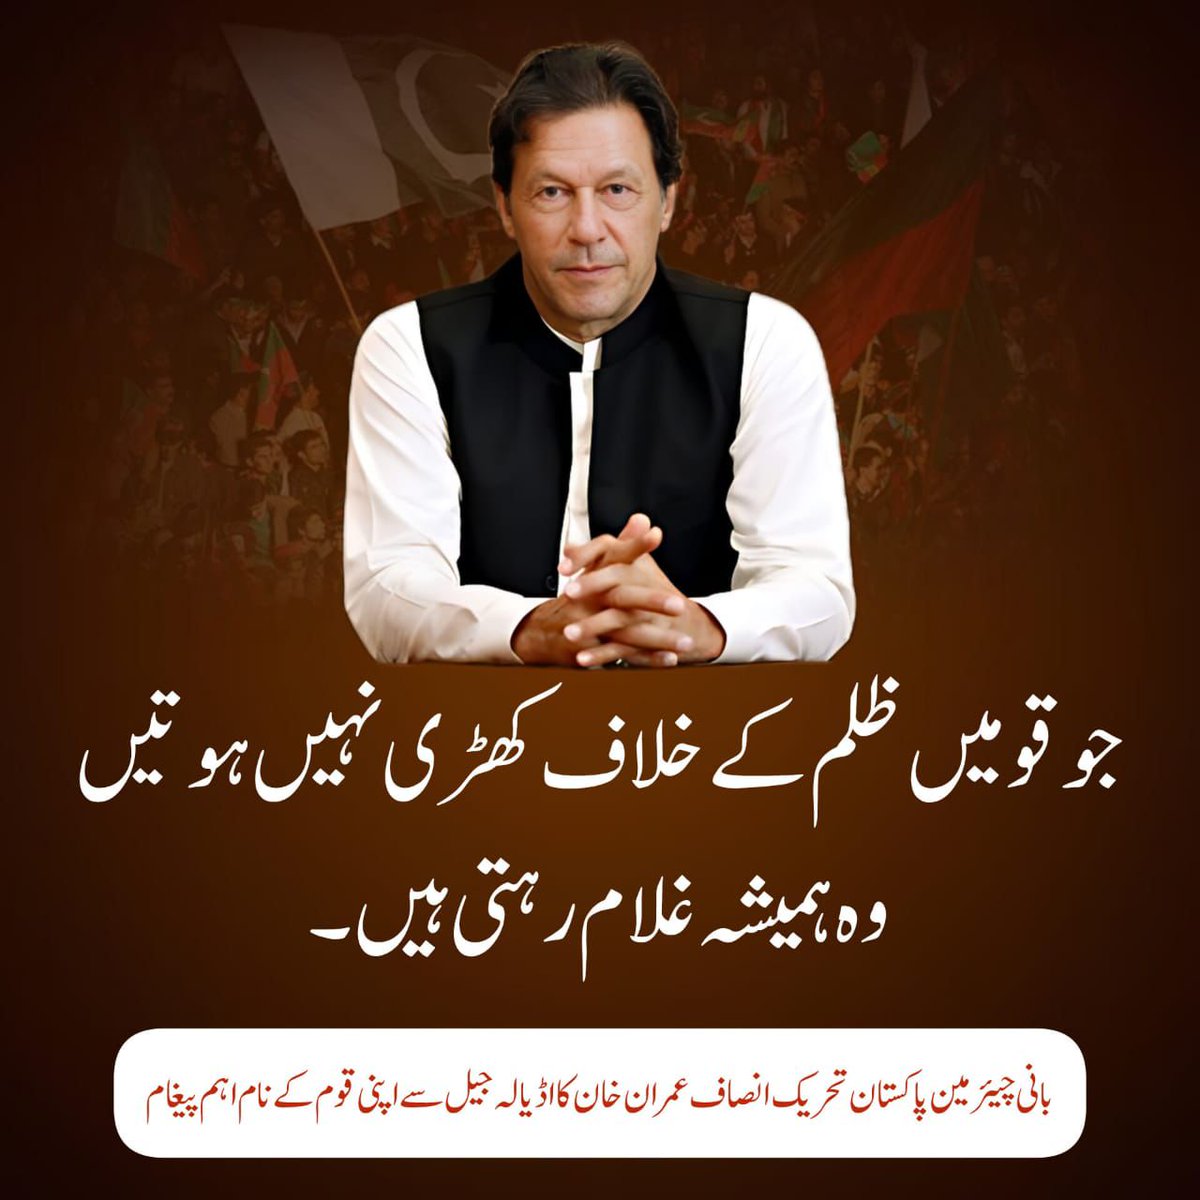 بانی چیئرمین پاکستان تحریک انصاف عمران خان کا اڈیالہ جیل سے قوم کےنام پیغام #ٹکر_کا_عمران_خان #BehindYouSkipper